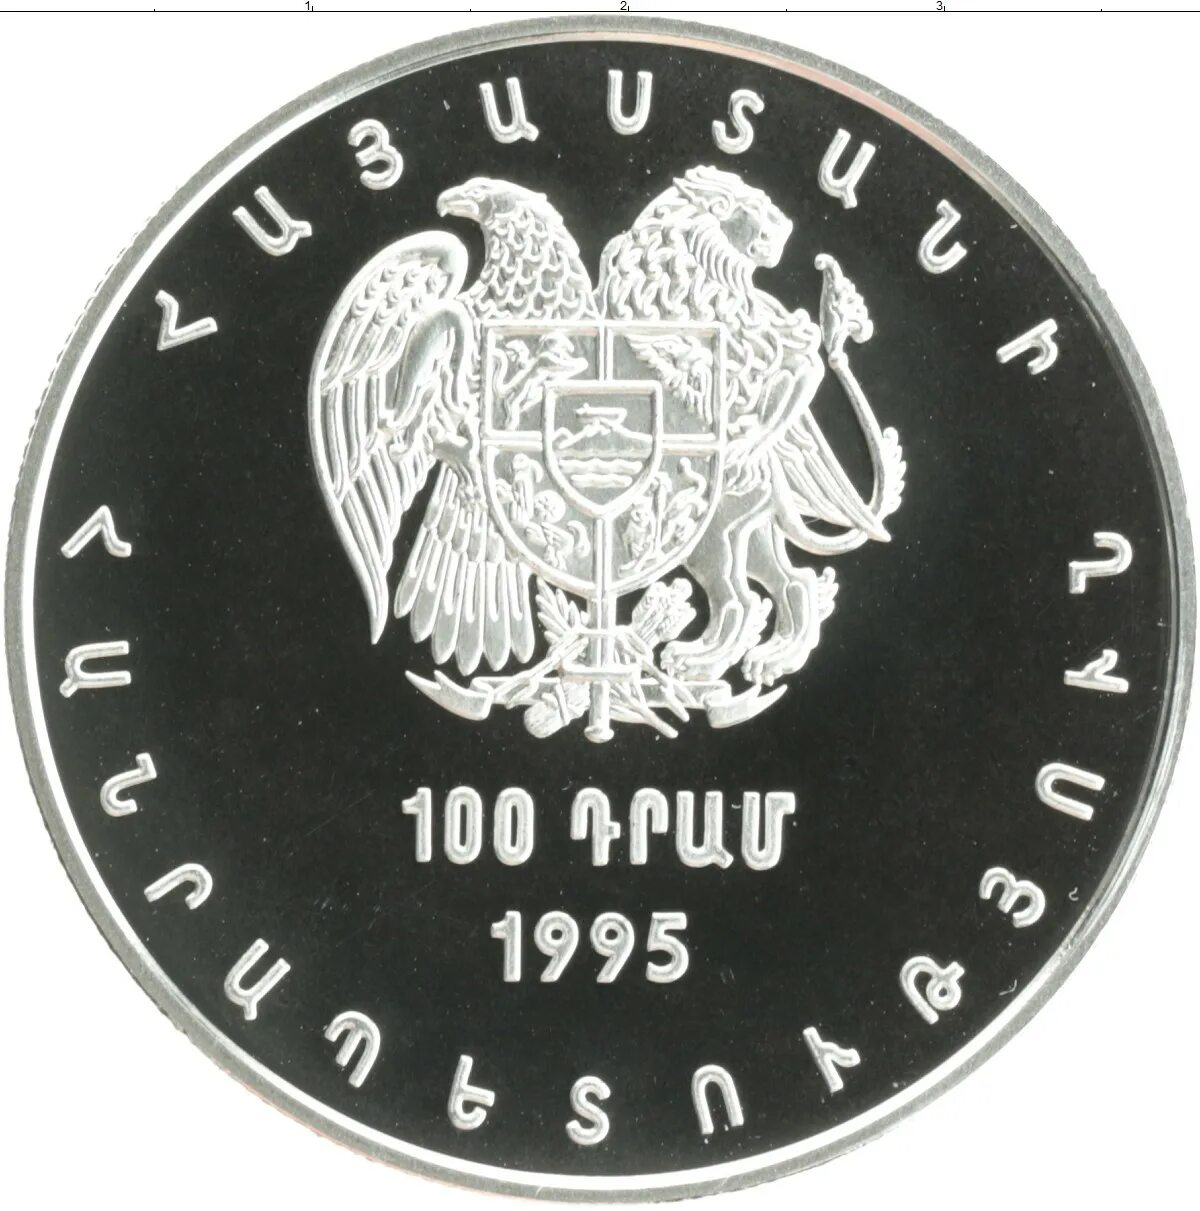 1 рубль в драмах армении на сегодня